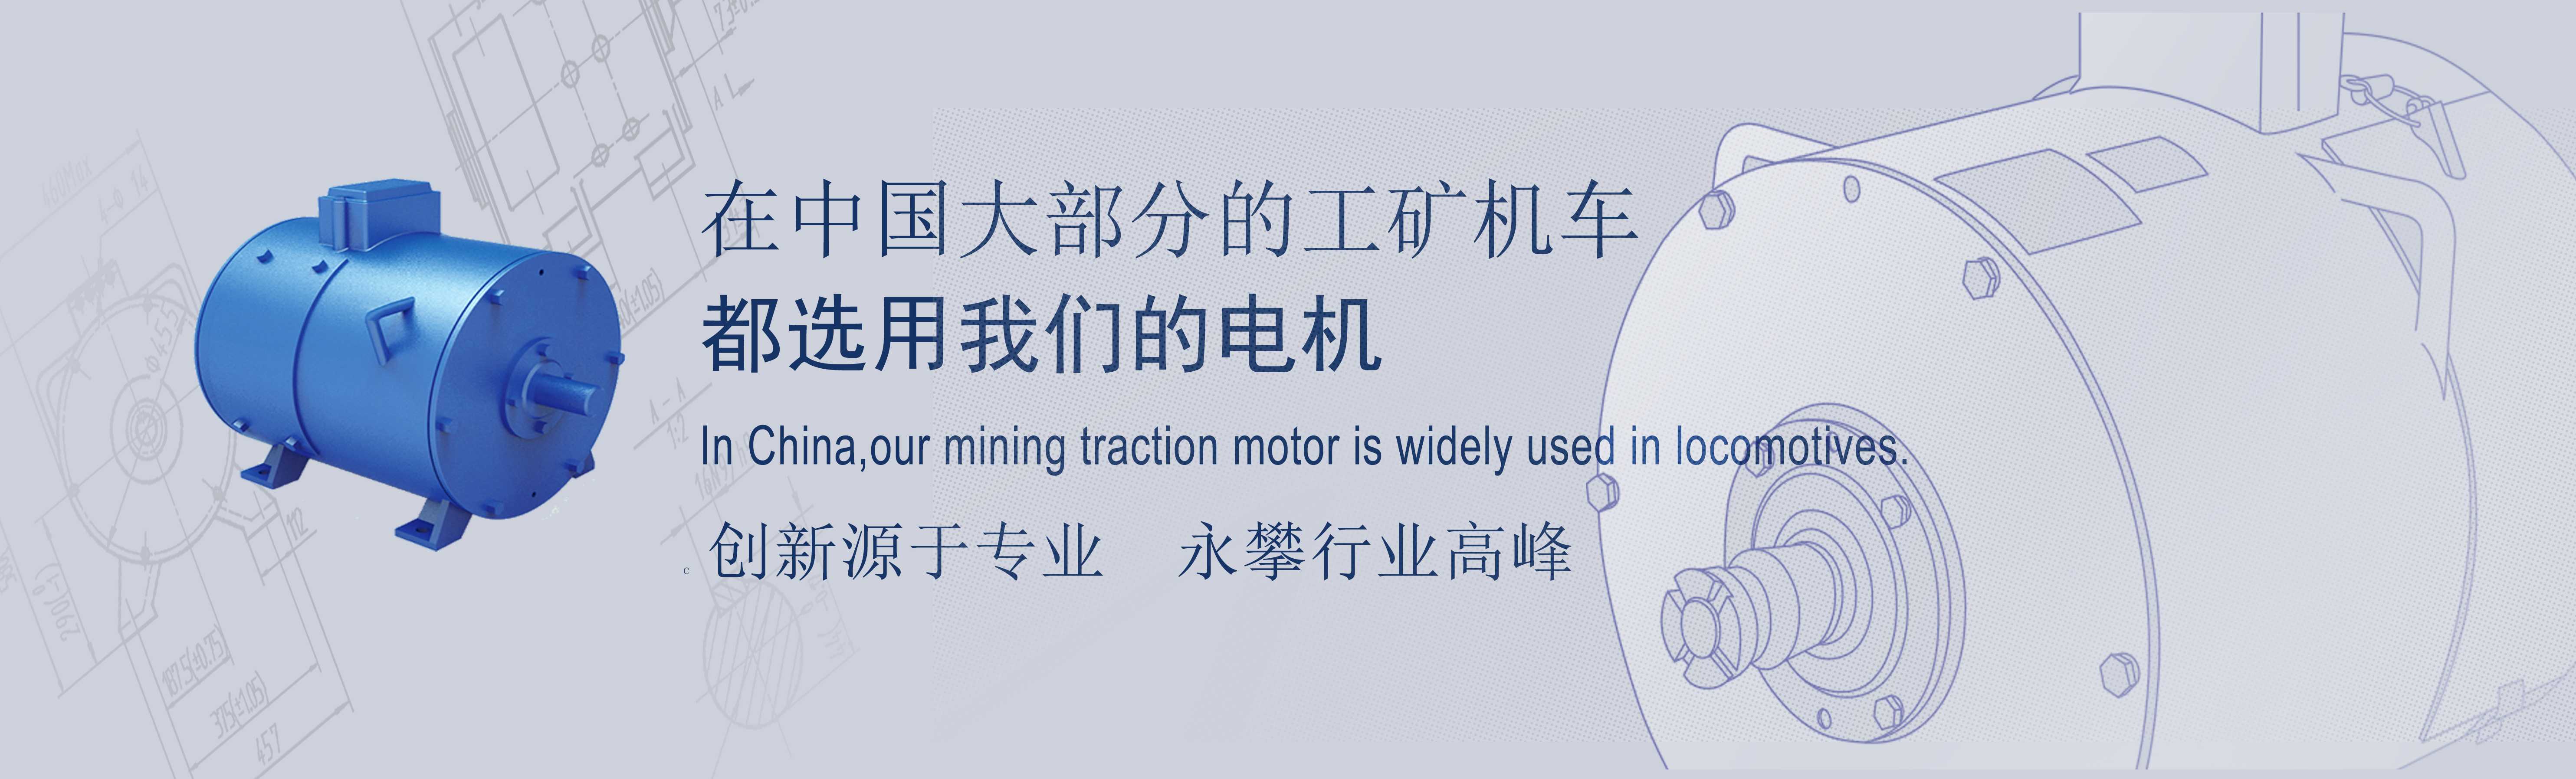 国外客户如何评价湘潭宇通锂电池电机车？